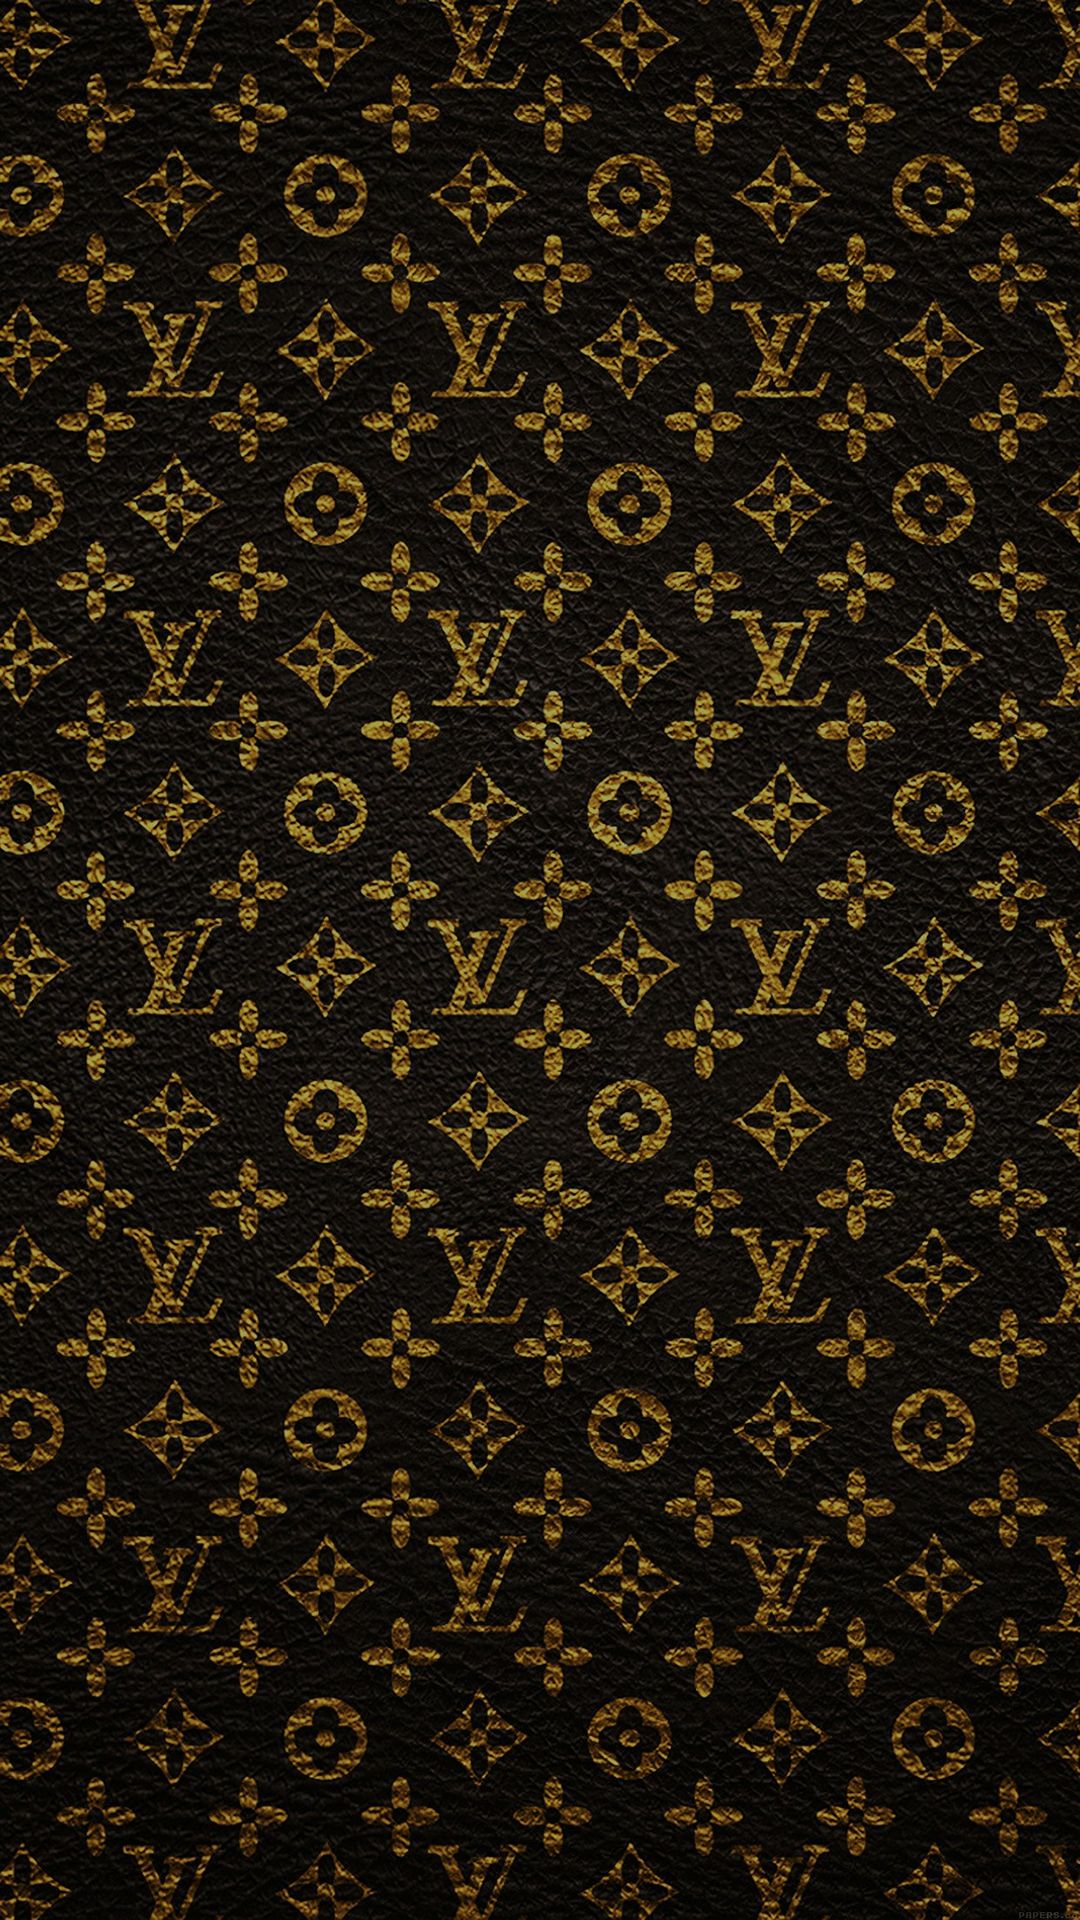 Louis Vuitton Dark Pattern Art iPhone Wallpaper